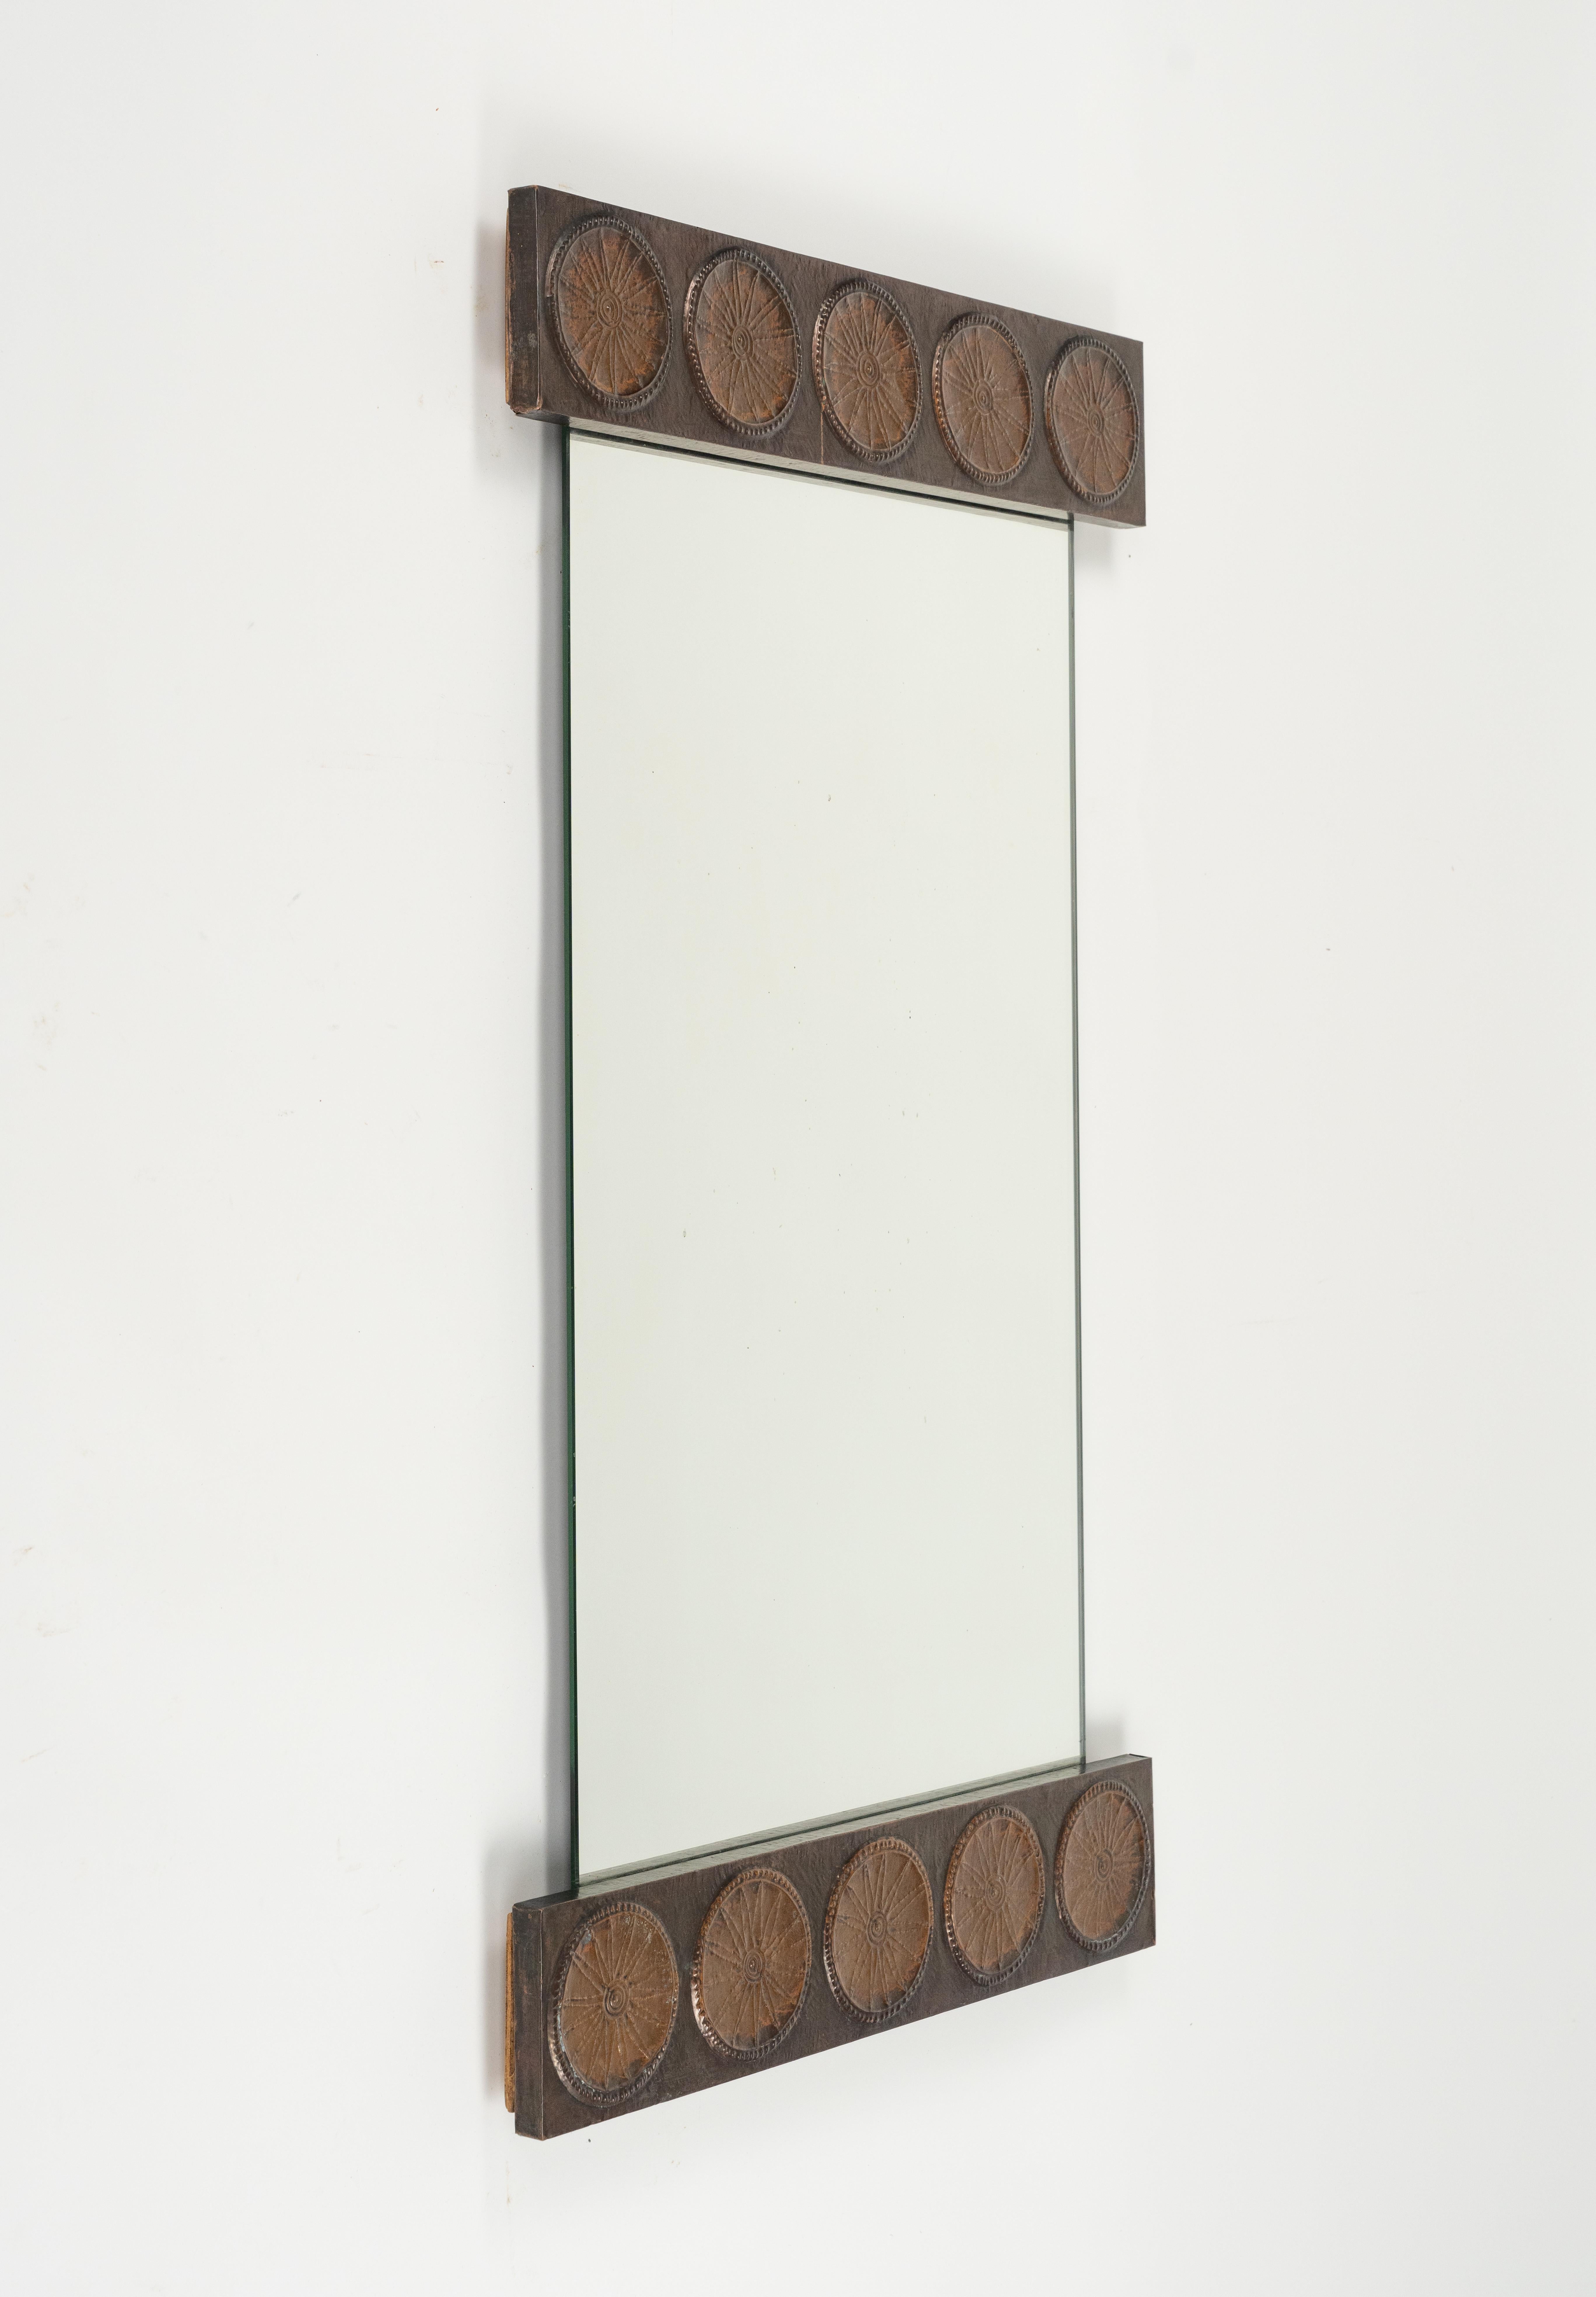 Midcentury Wall Mirror in Copper by Santambrogio & De Berti, Italy, 1960s For Sale 7